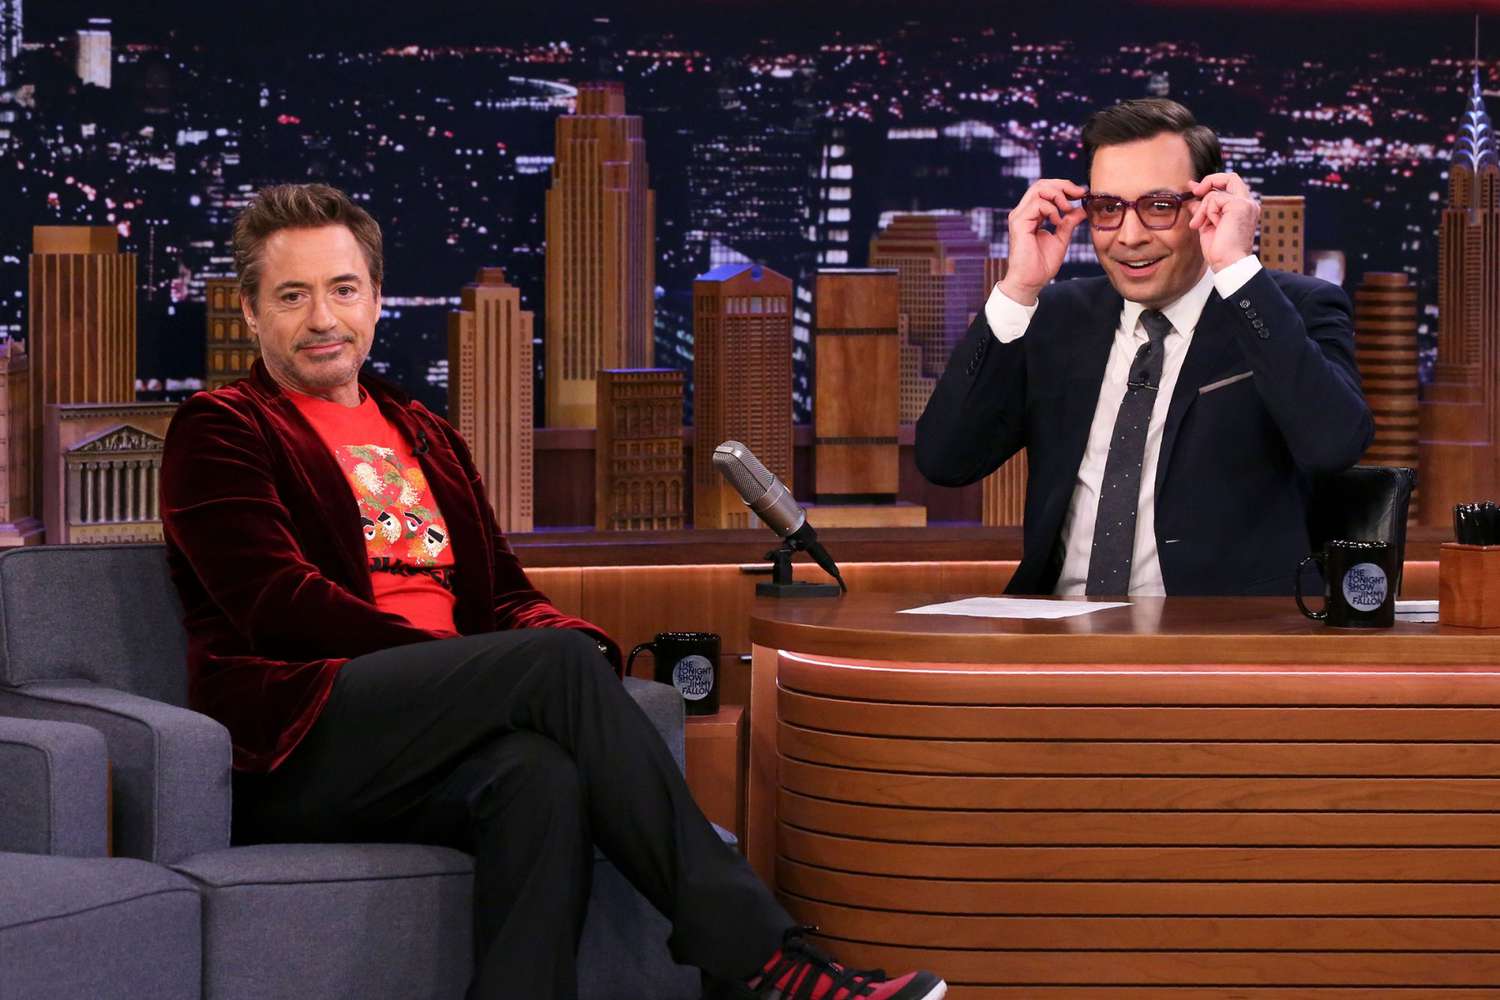 Robert Downey Jr., Jimmy Fallon recall their worst SNL bits | EW.com